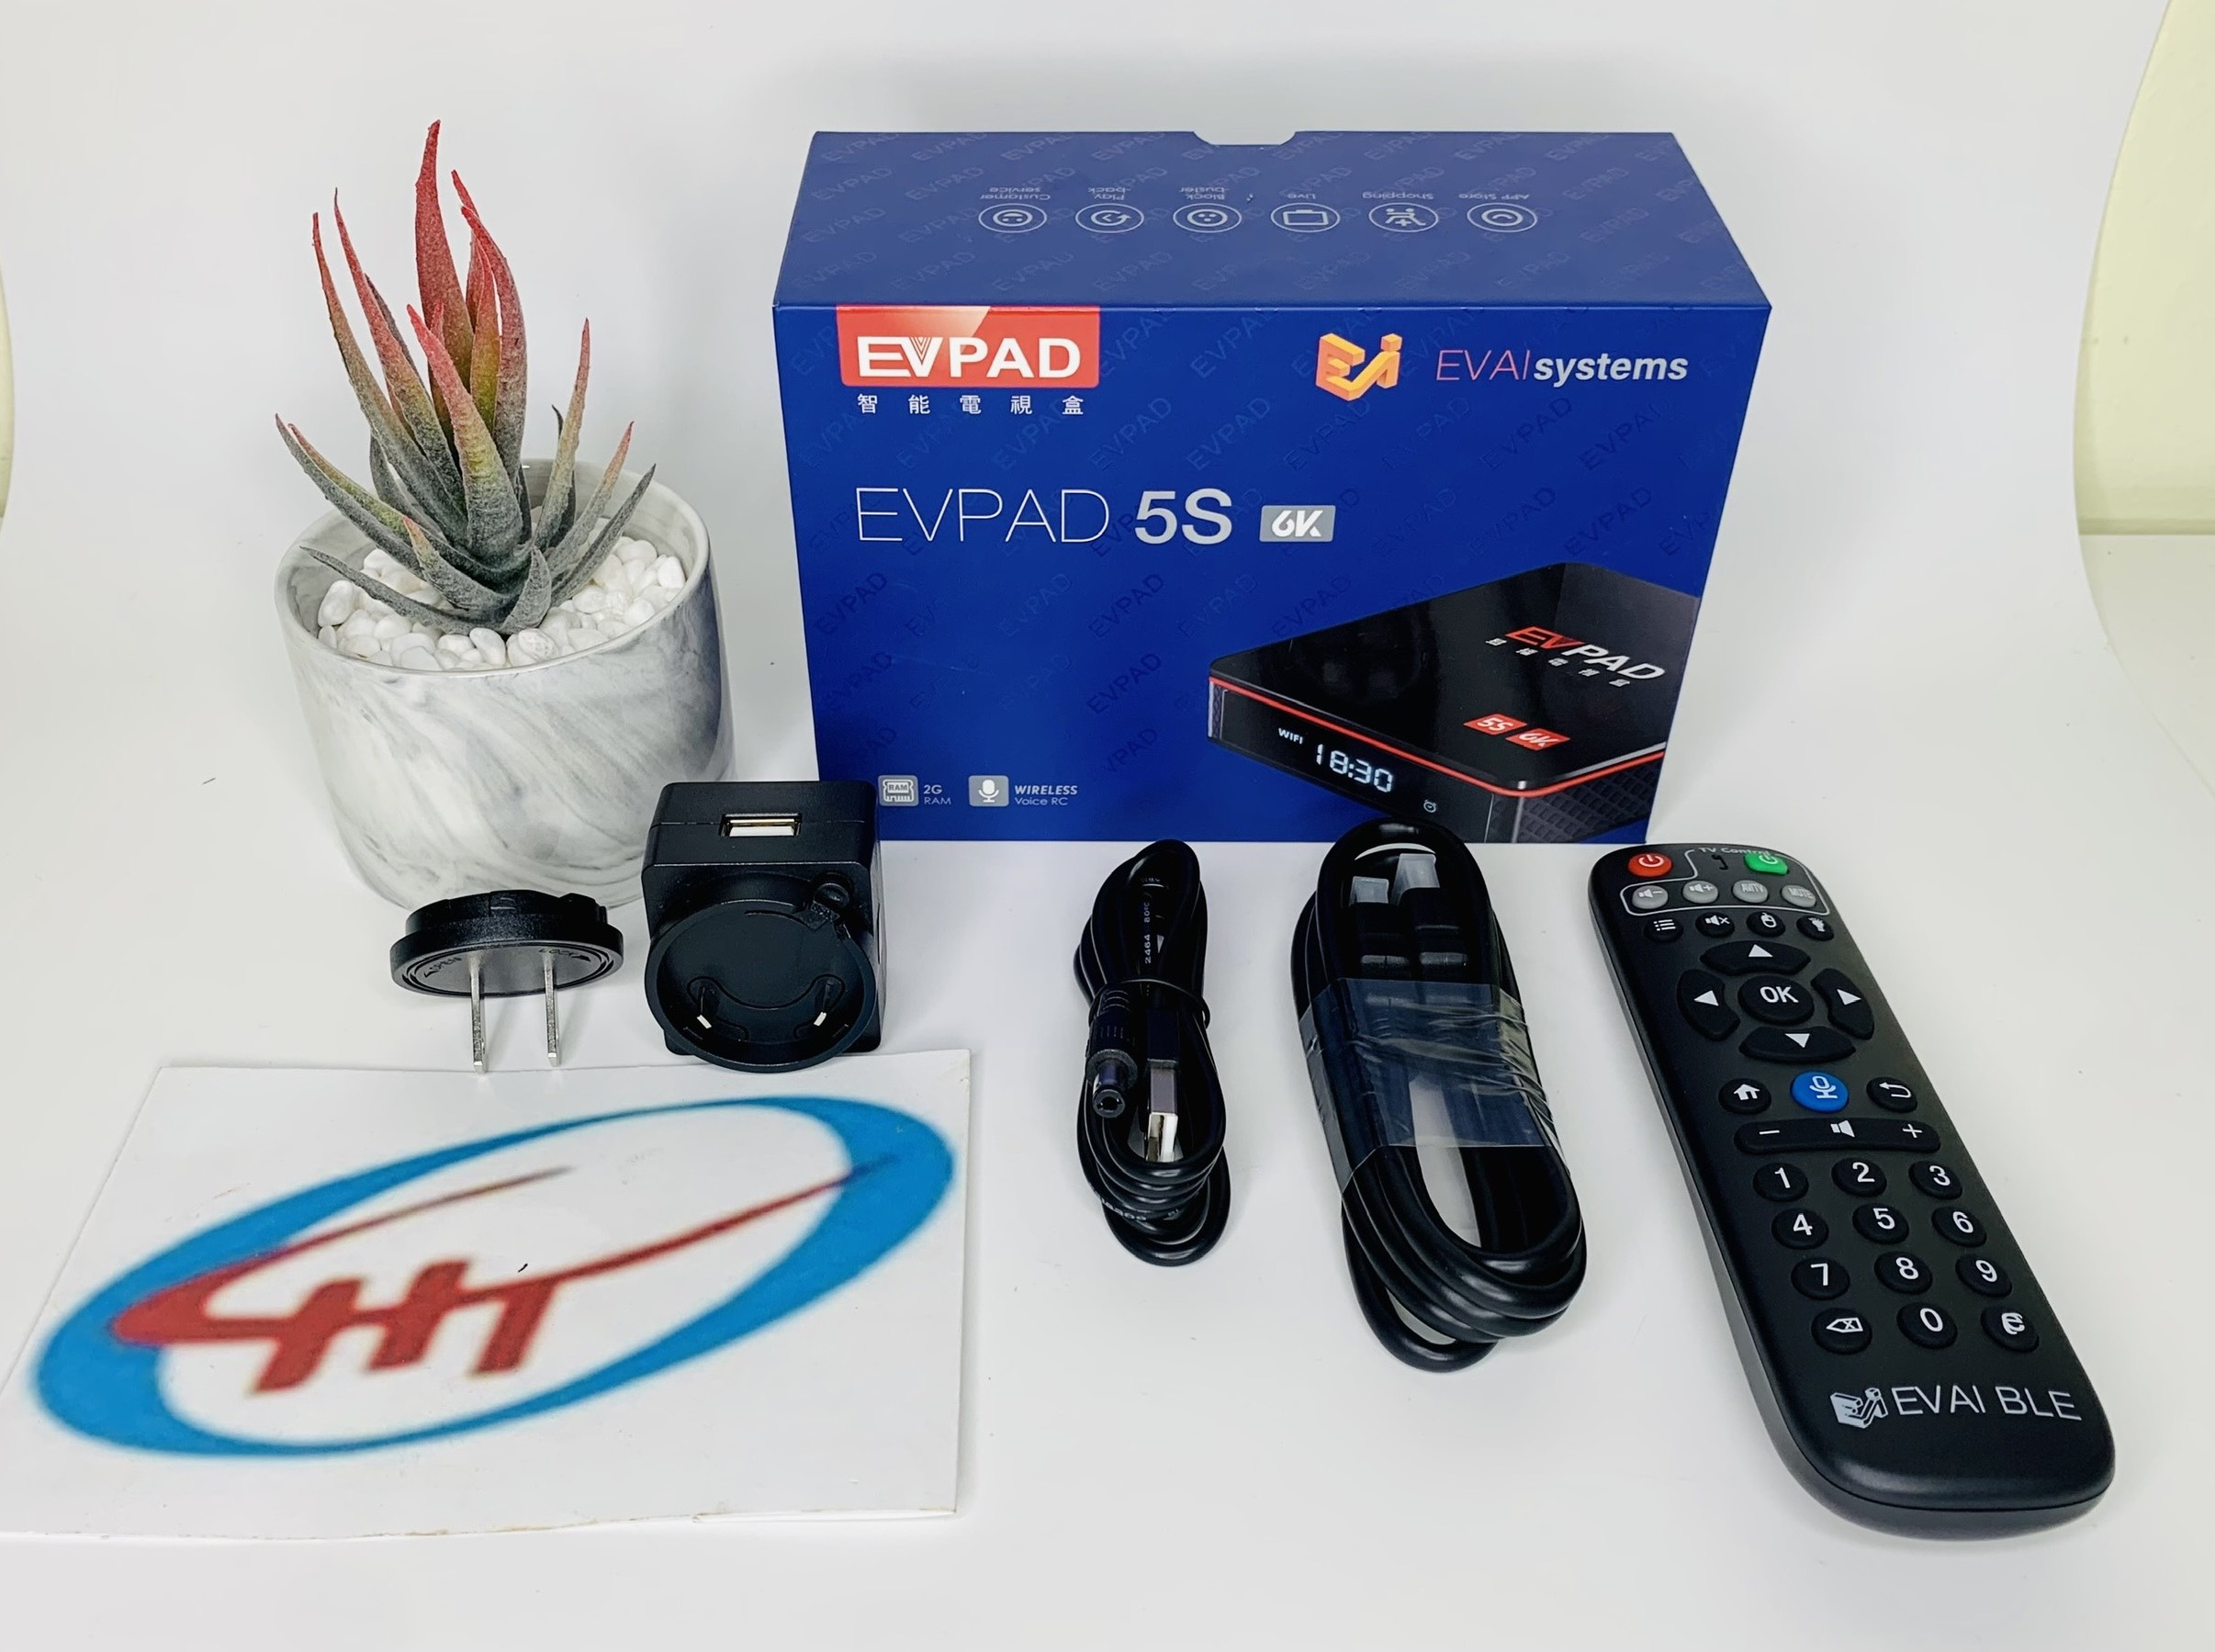 smart tv box EVPAD 5S - XEM TRUYỀN HÌNH 14 QUỐC GIA VỚI HƠN 1100 KÊNH, Hàng Chính Hãng